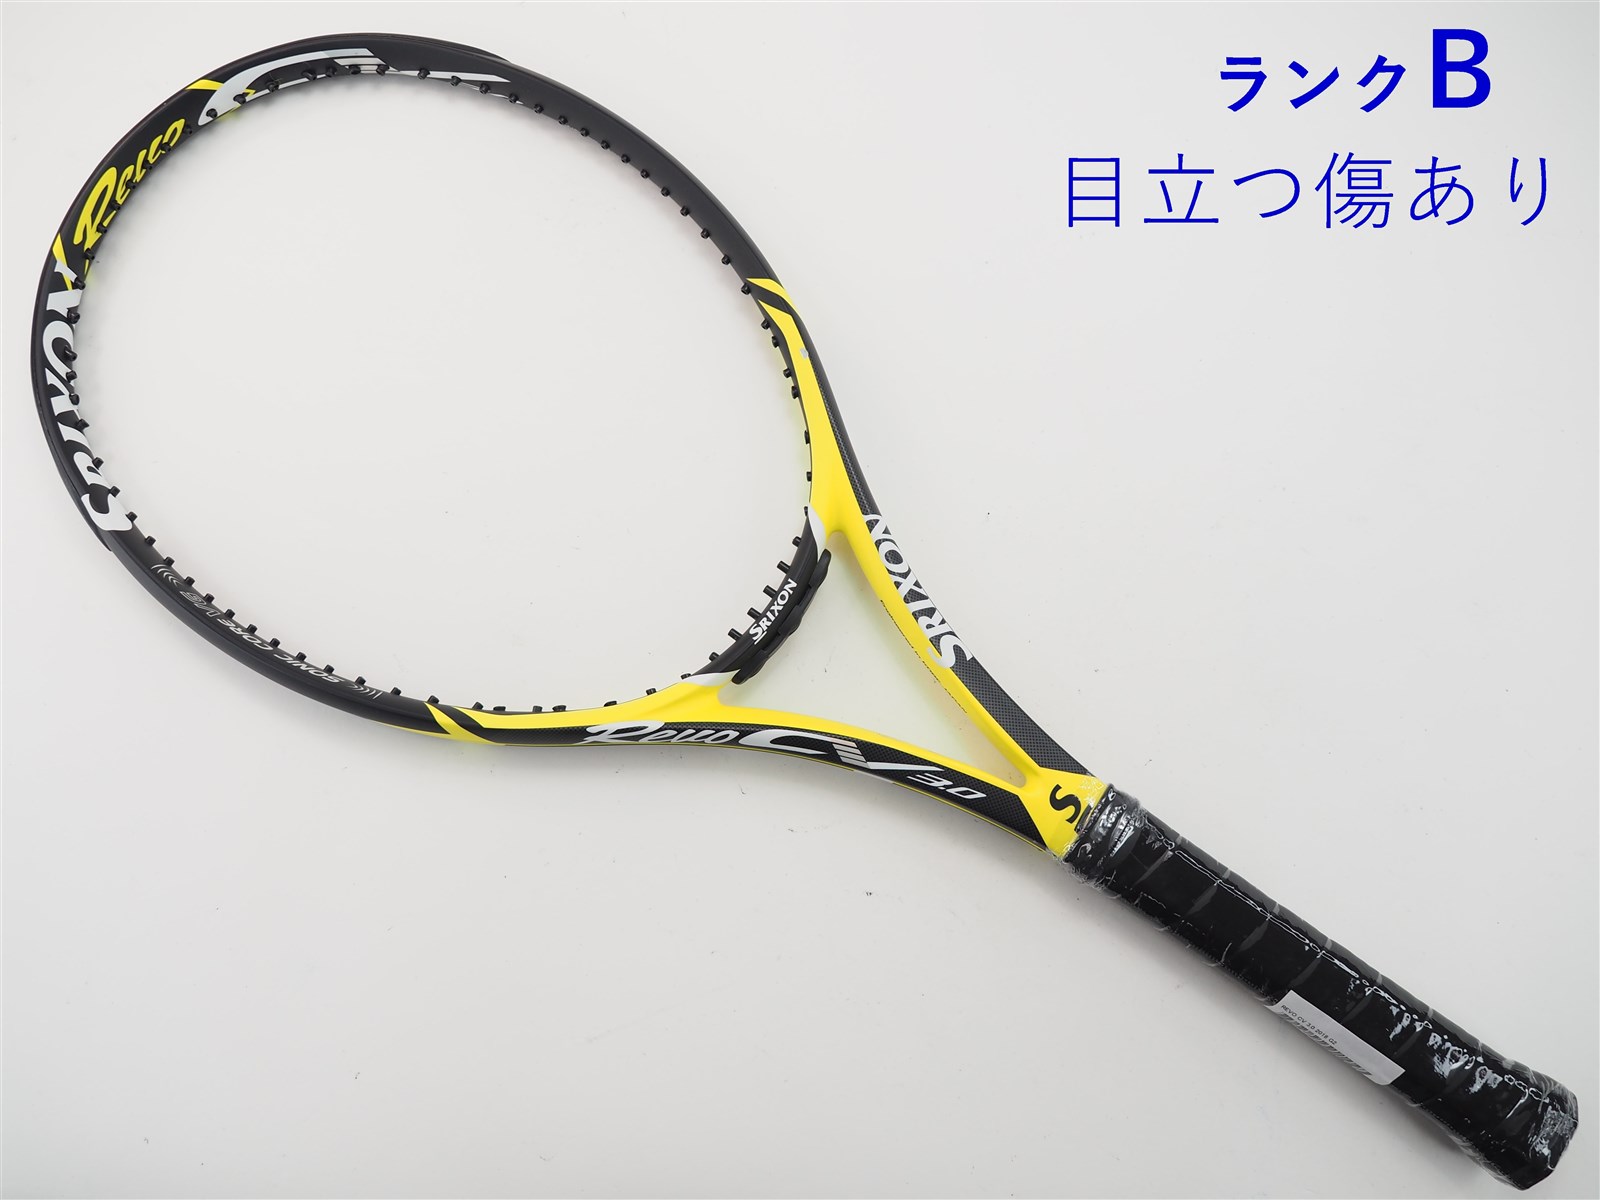 テニスラケット スリクソン レヴォ シーブイ 5.0 2018年モデル (G1)SRIXON REVO CV 5.0 2018